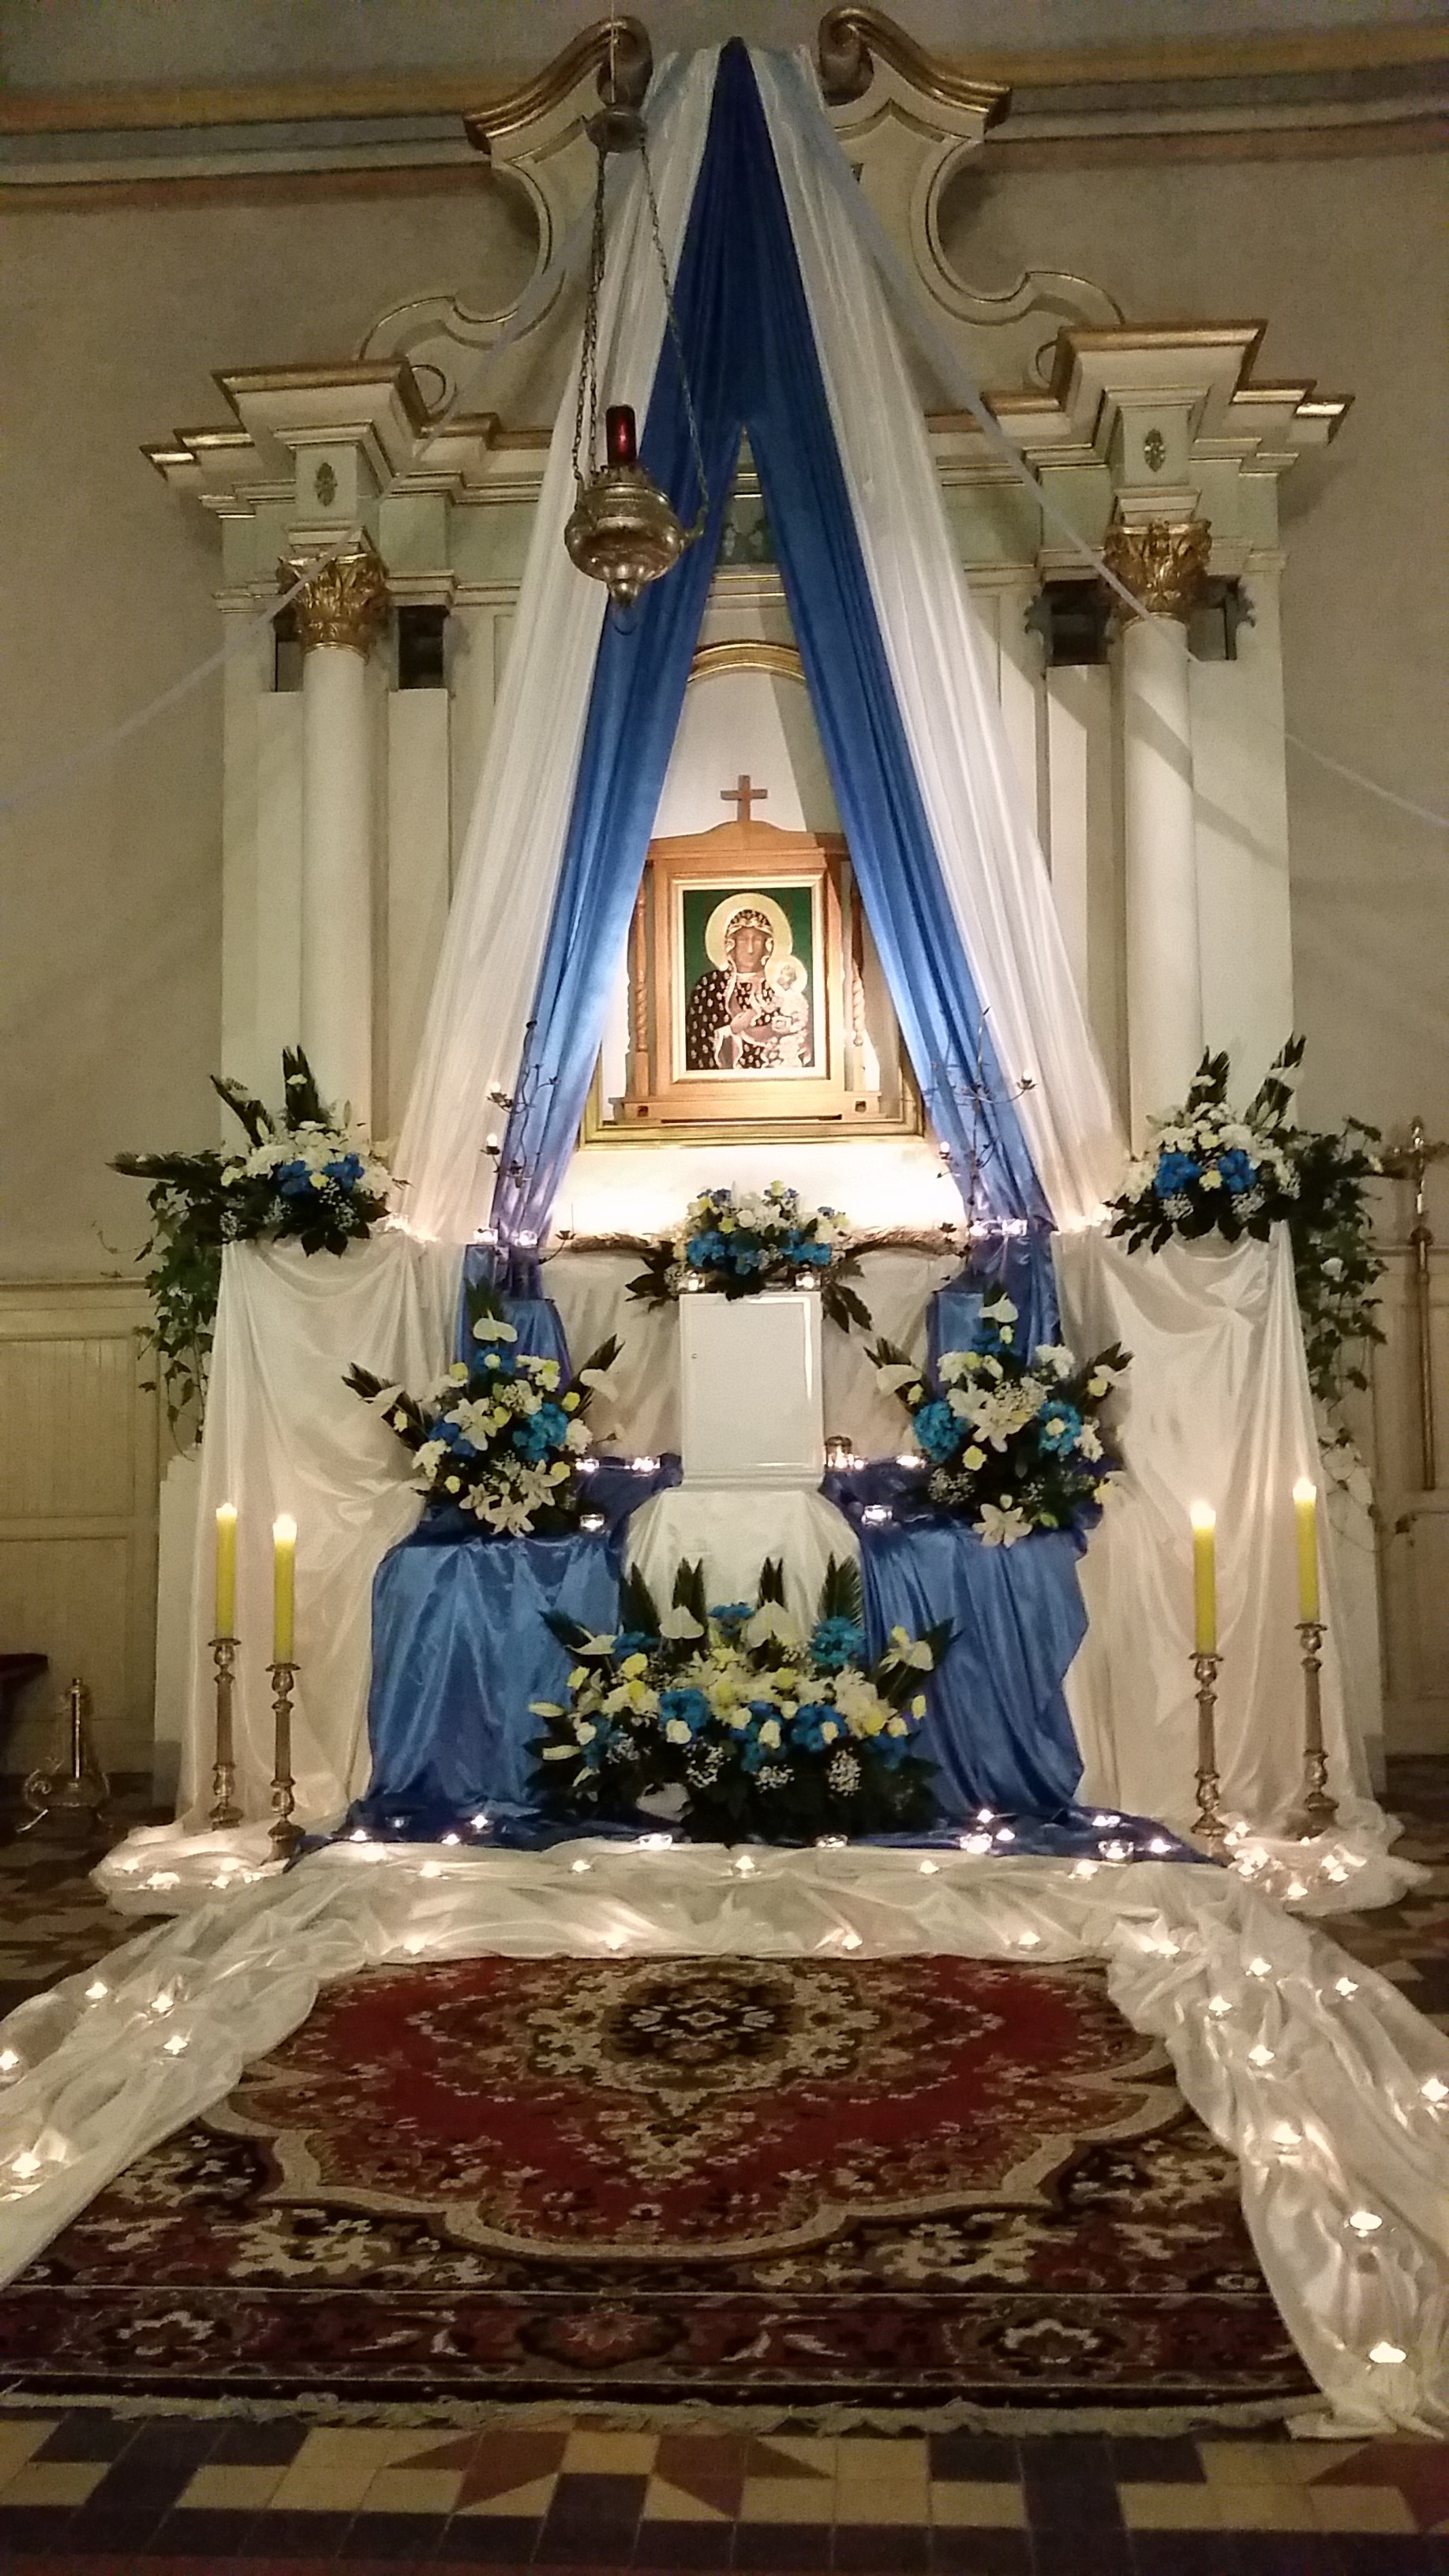 obraz2rocznica org - Druga rocznica nawiedzenia obrazu Matki Boskiej Częstochowskiej